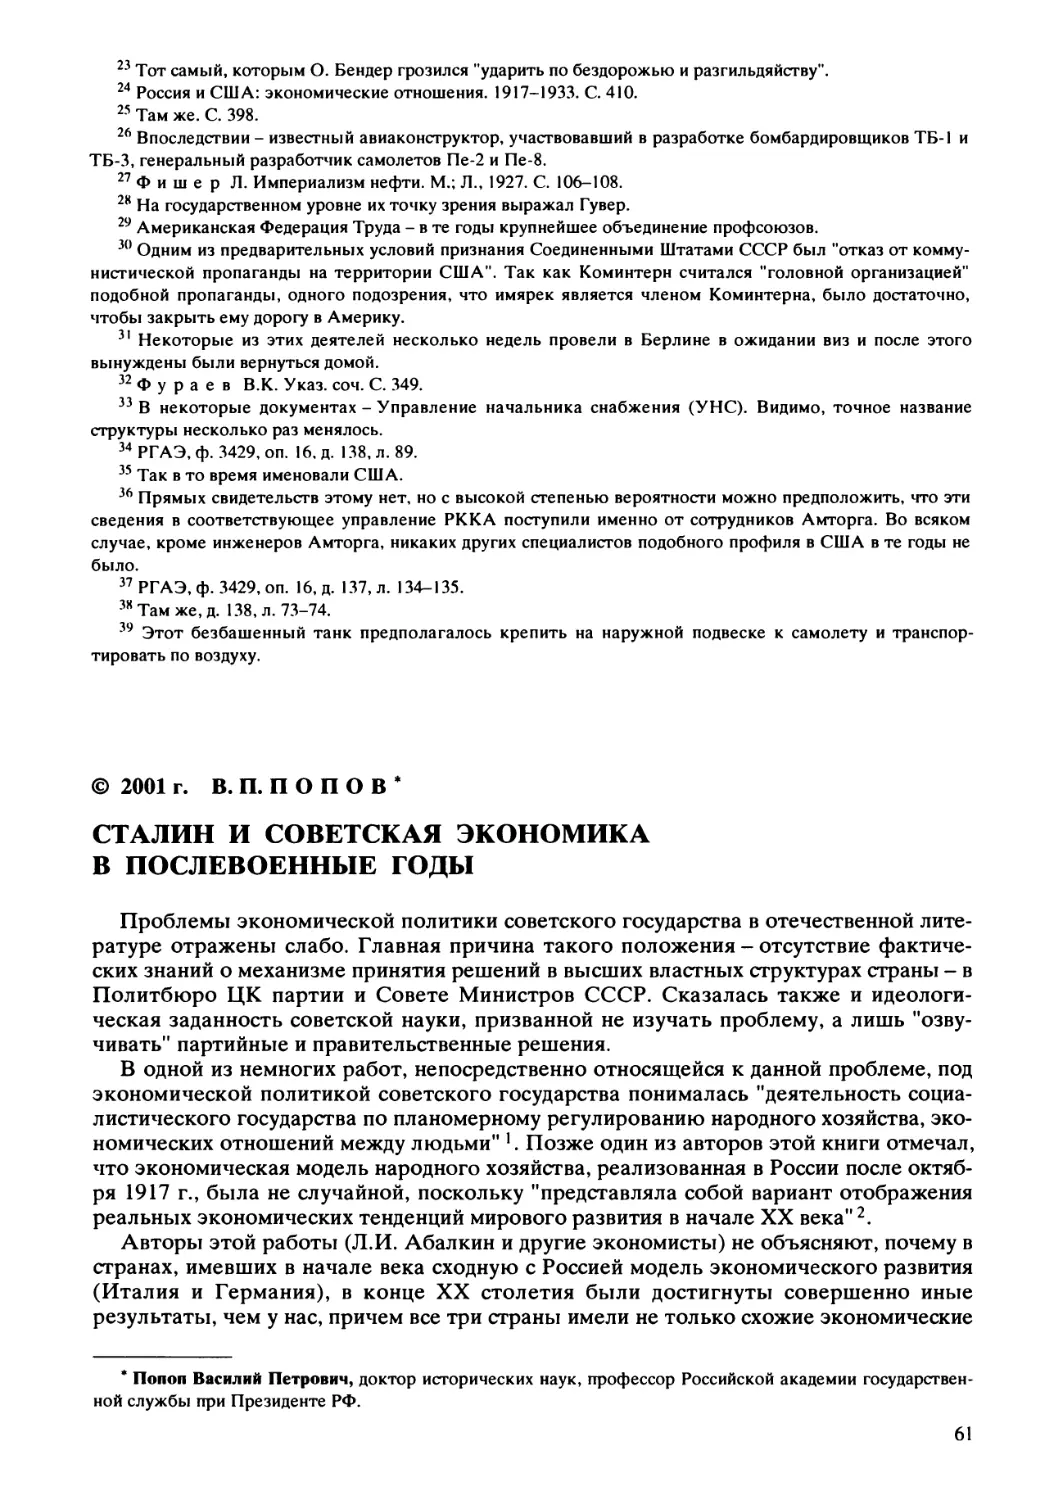 Попов В.П. - Сталин и советская экономика в послевоенные годы